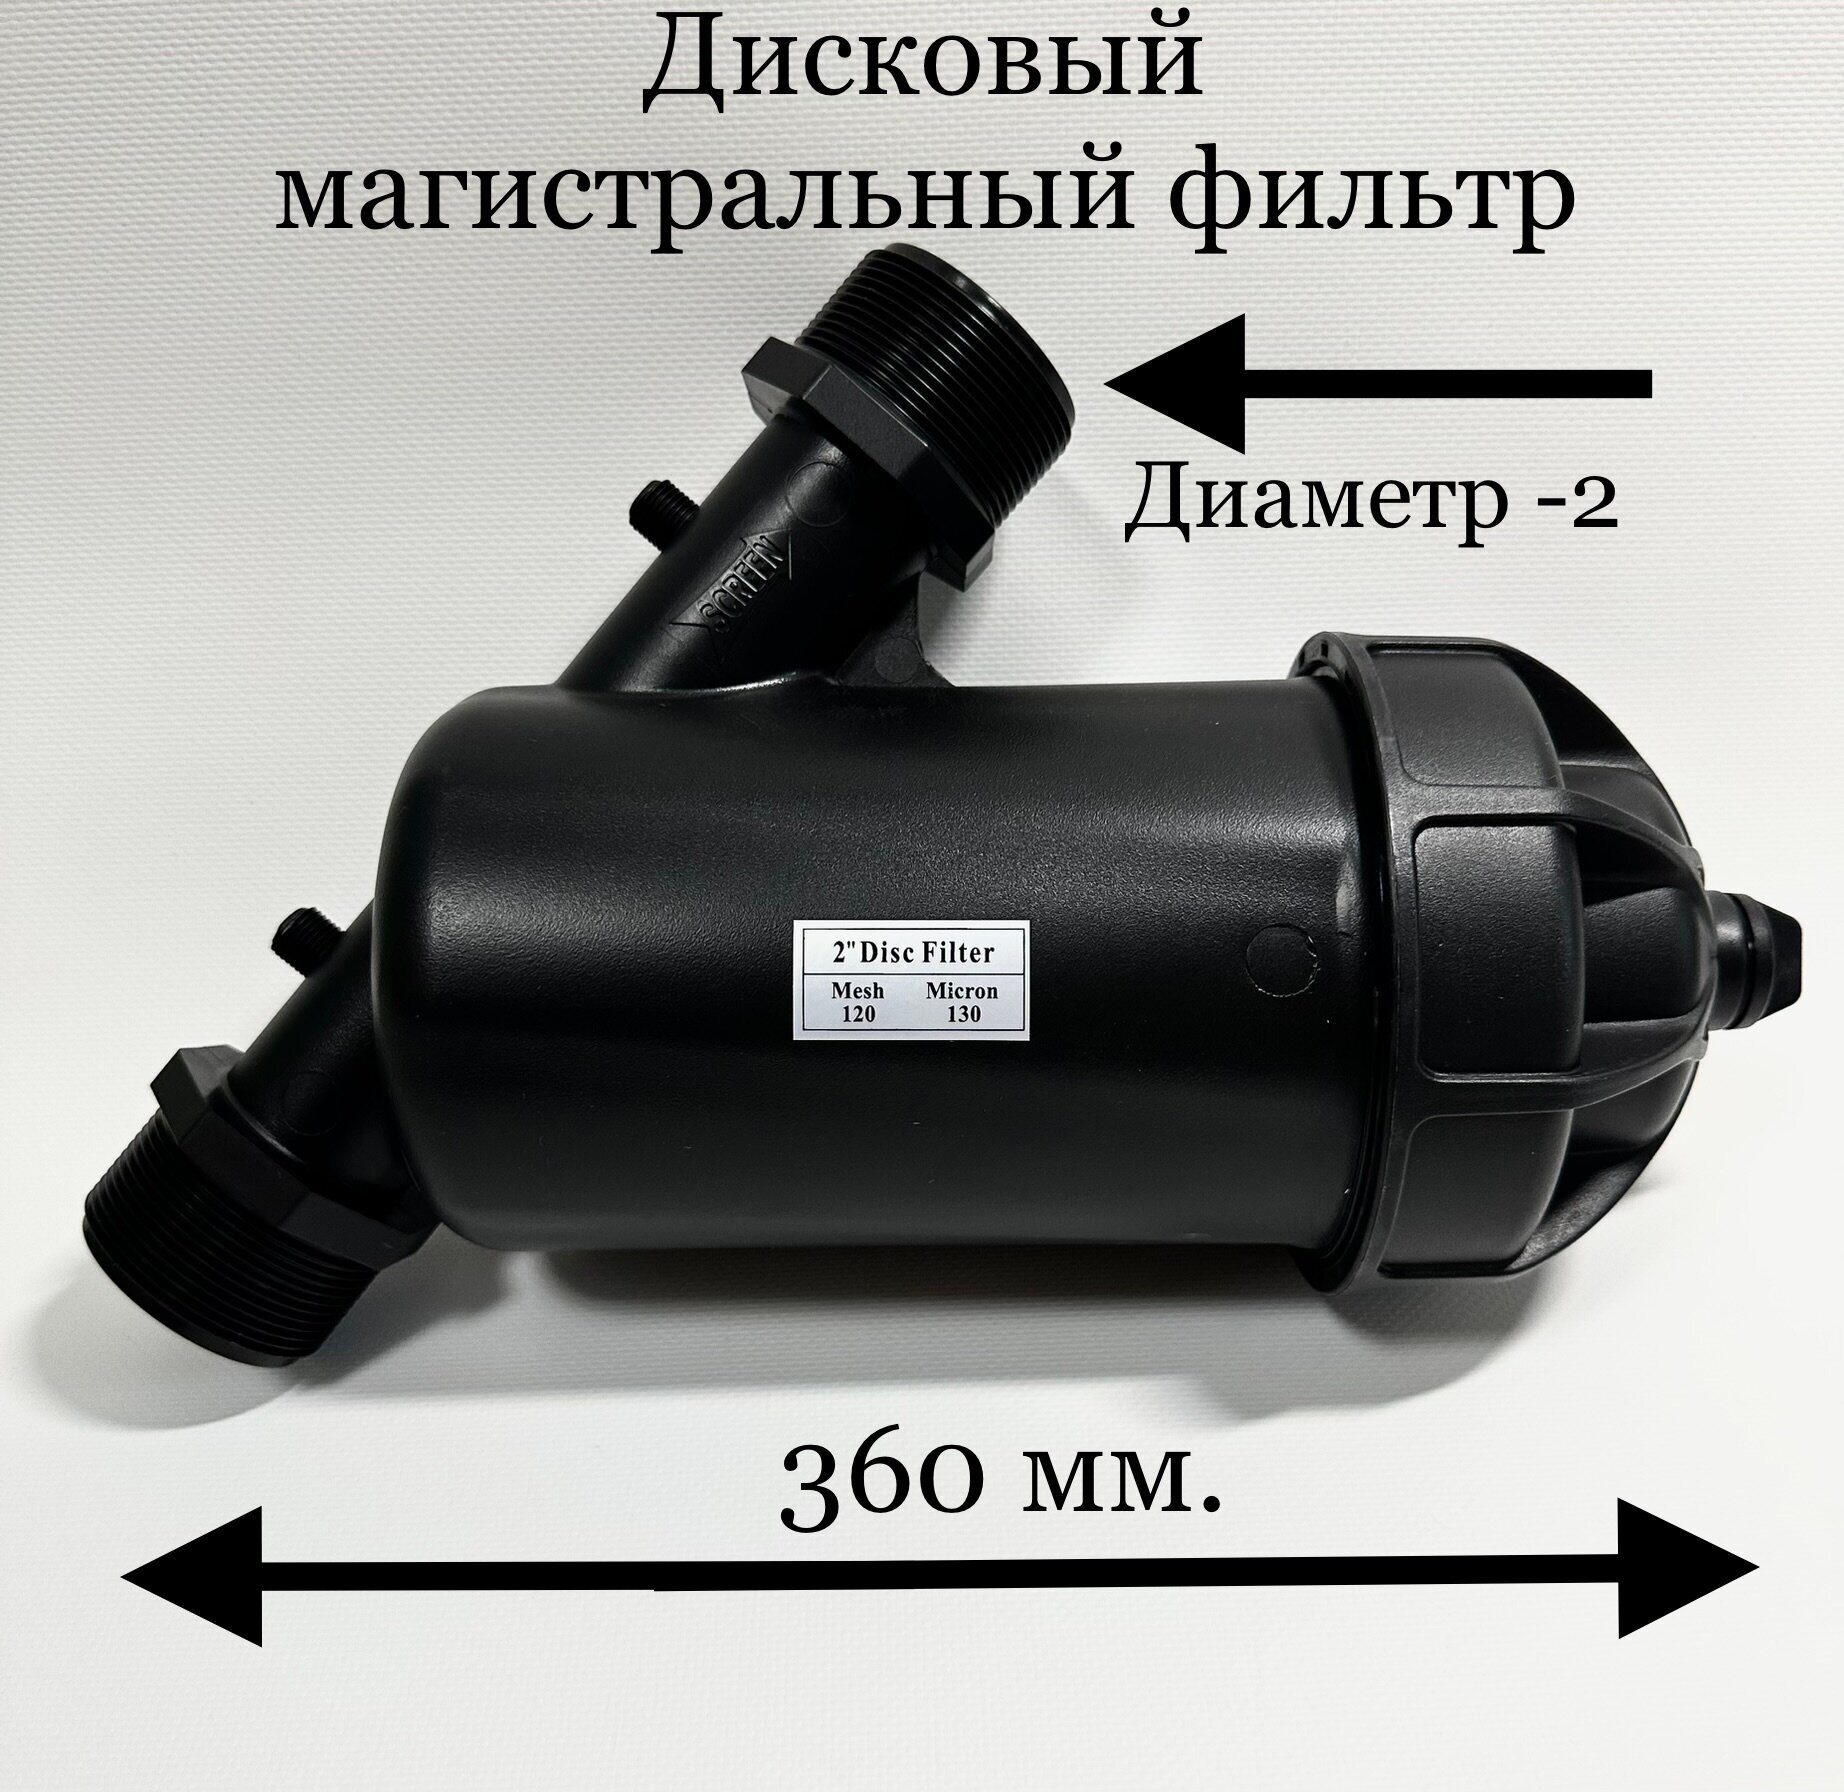 Дисковый магистральный фильтр для очистки воды размер -2" F63YD - фотография № 1